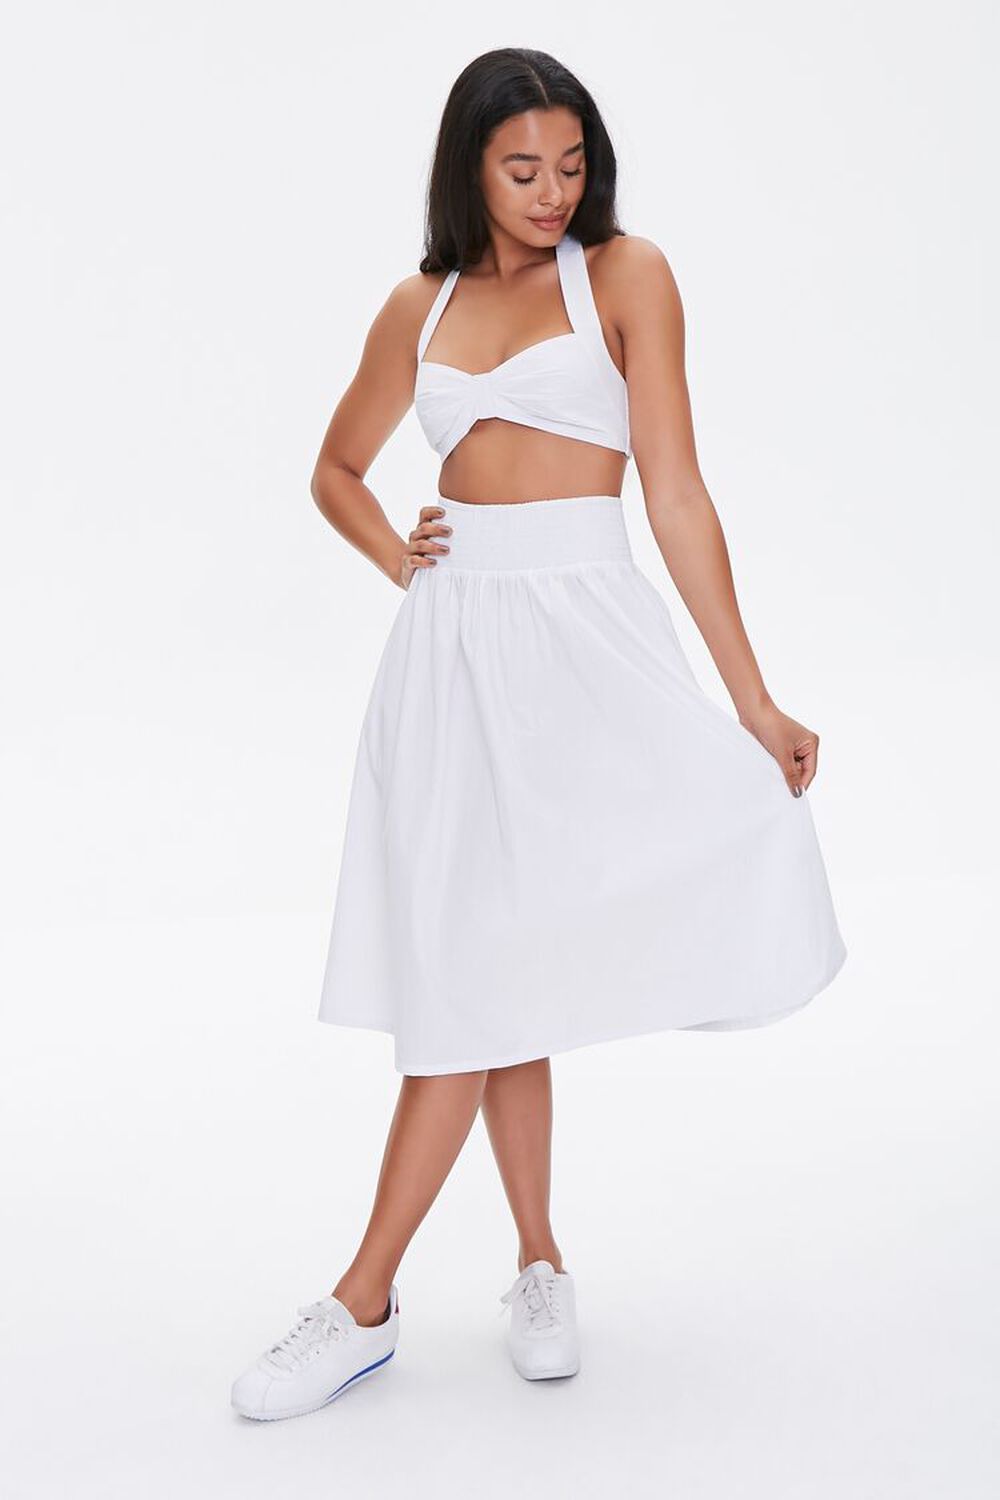 WHITE Sweetheart Crop Top & Skirt Set, image 1